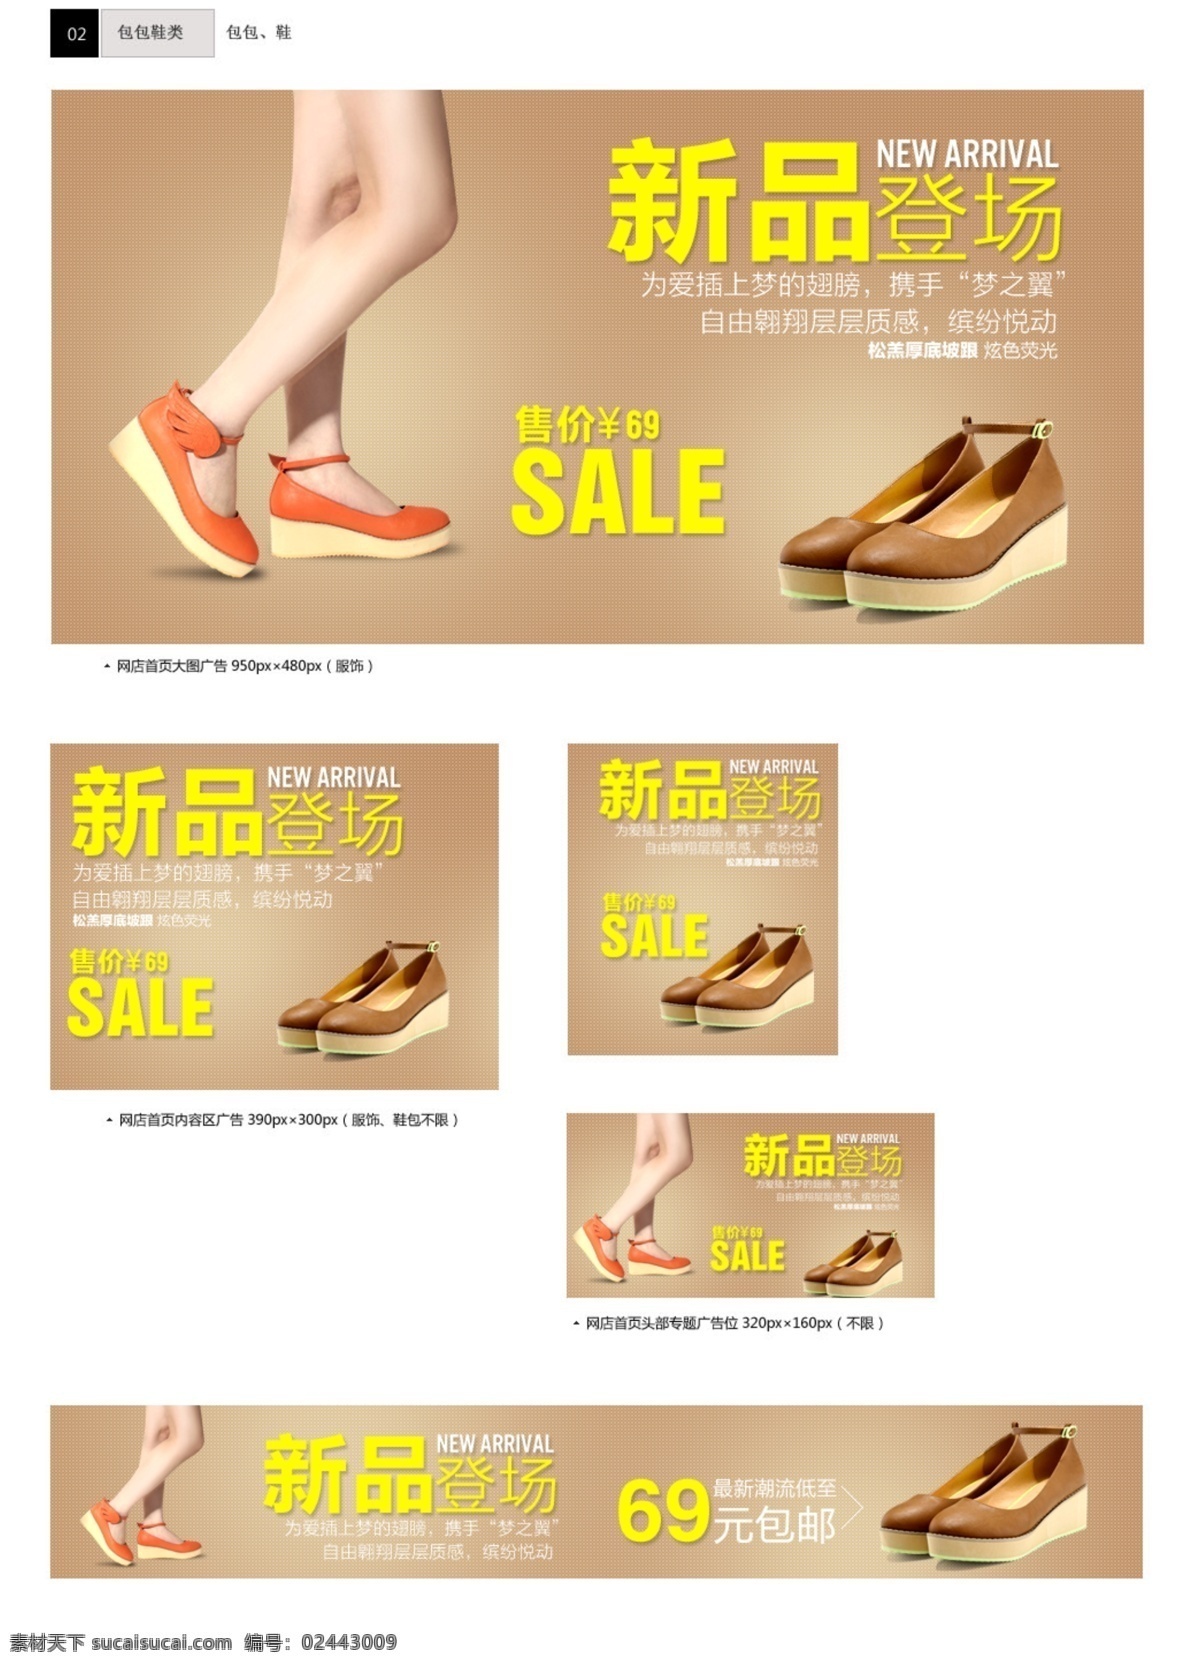 鞋子素材下载 鞋子模板下载 鞋子 网页模板 网页素材 设计素材 中文模板 源文件 白色